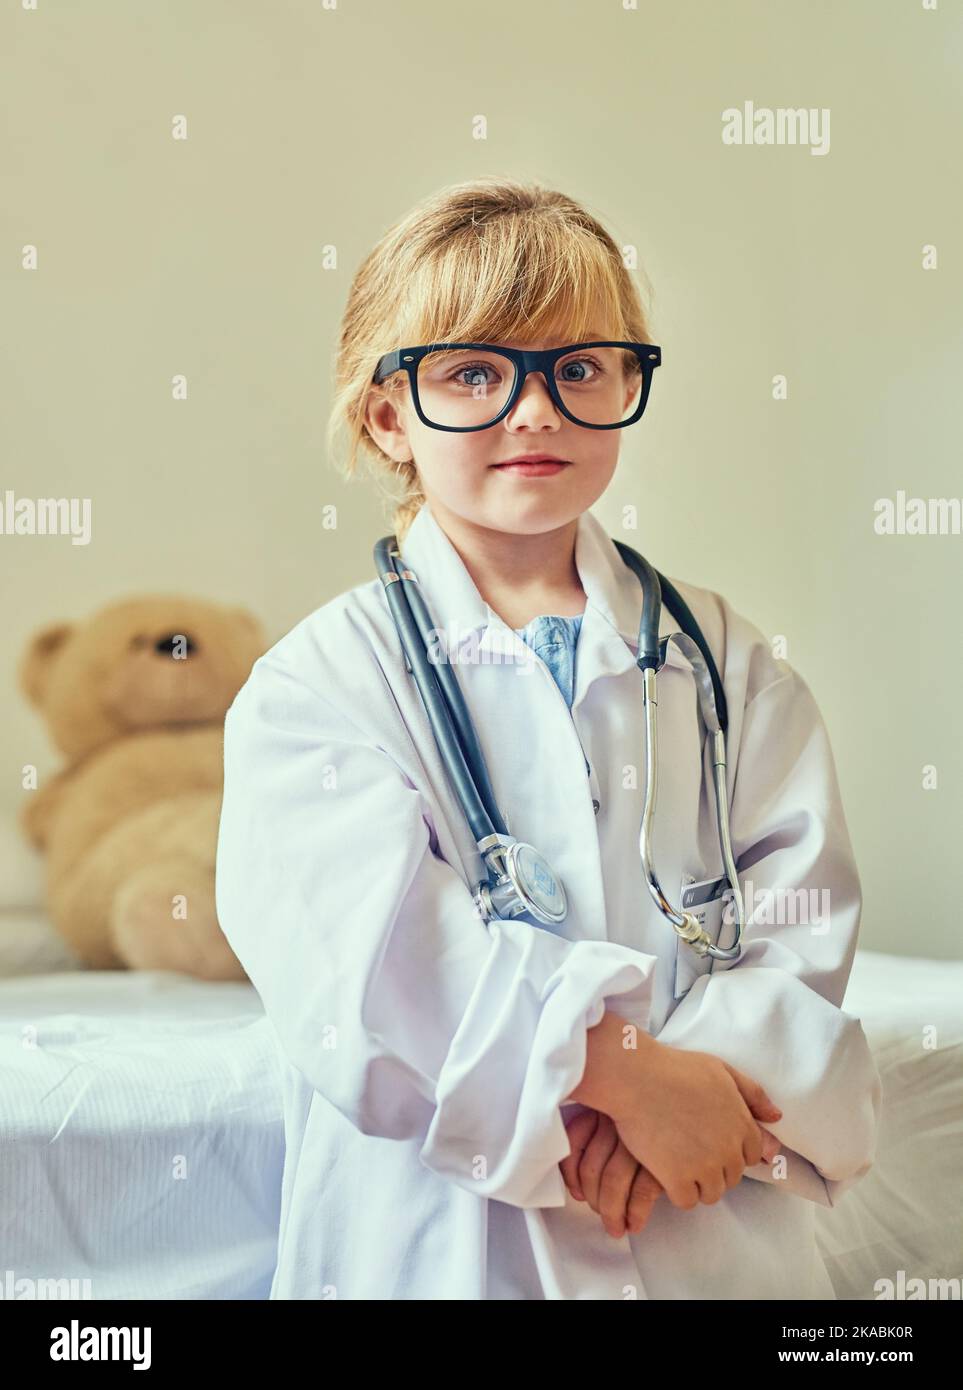 Mi guardi ottenere il premio nobel in medicina. Ritratto di un'adorabile bambina vestita da medico e che mostra un gesto di pollice in su. Foto Stock